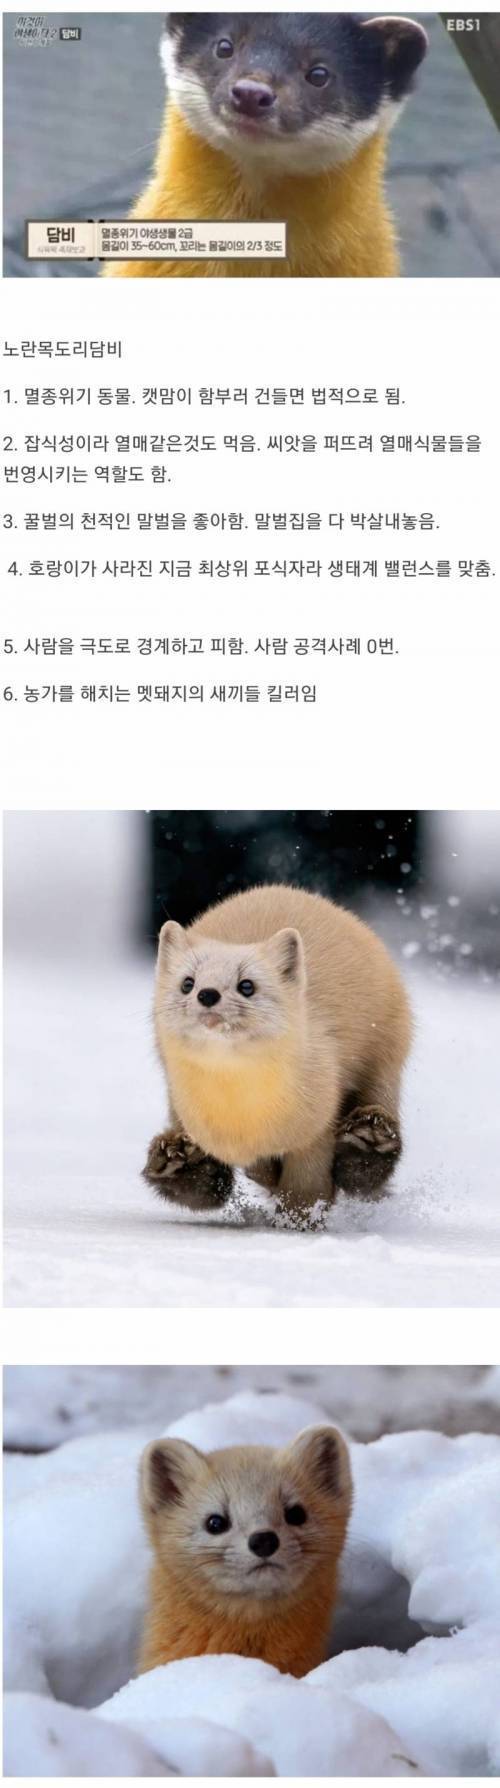 7 한국 생태계 최상급 동물.jpg